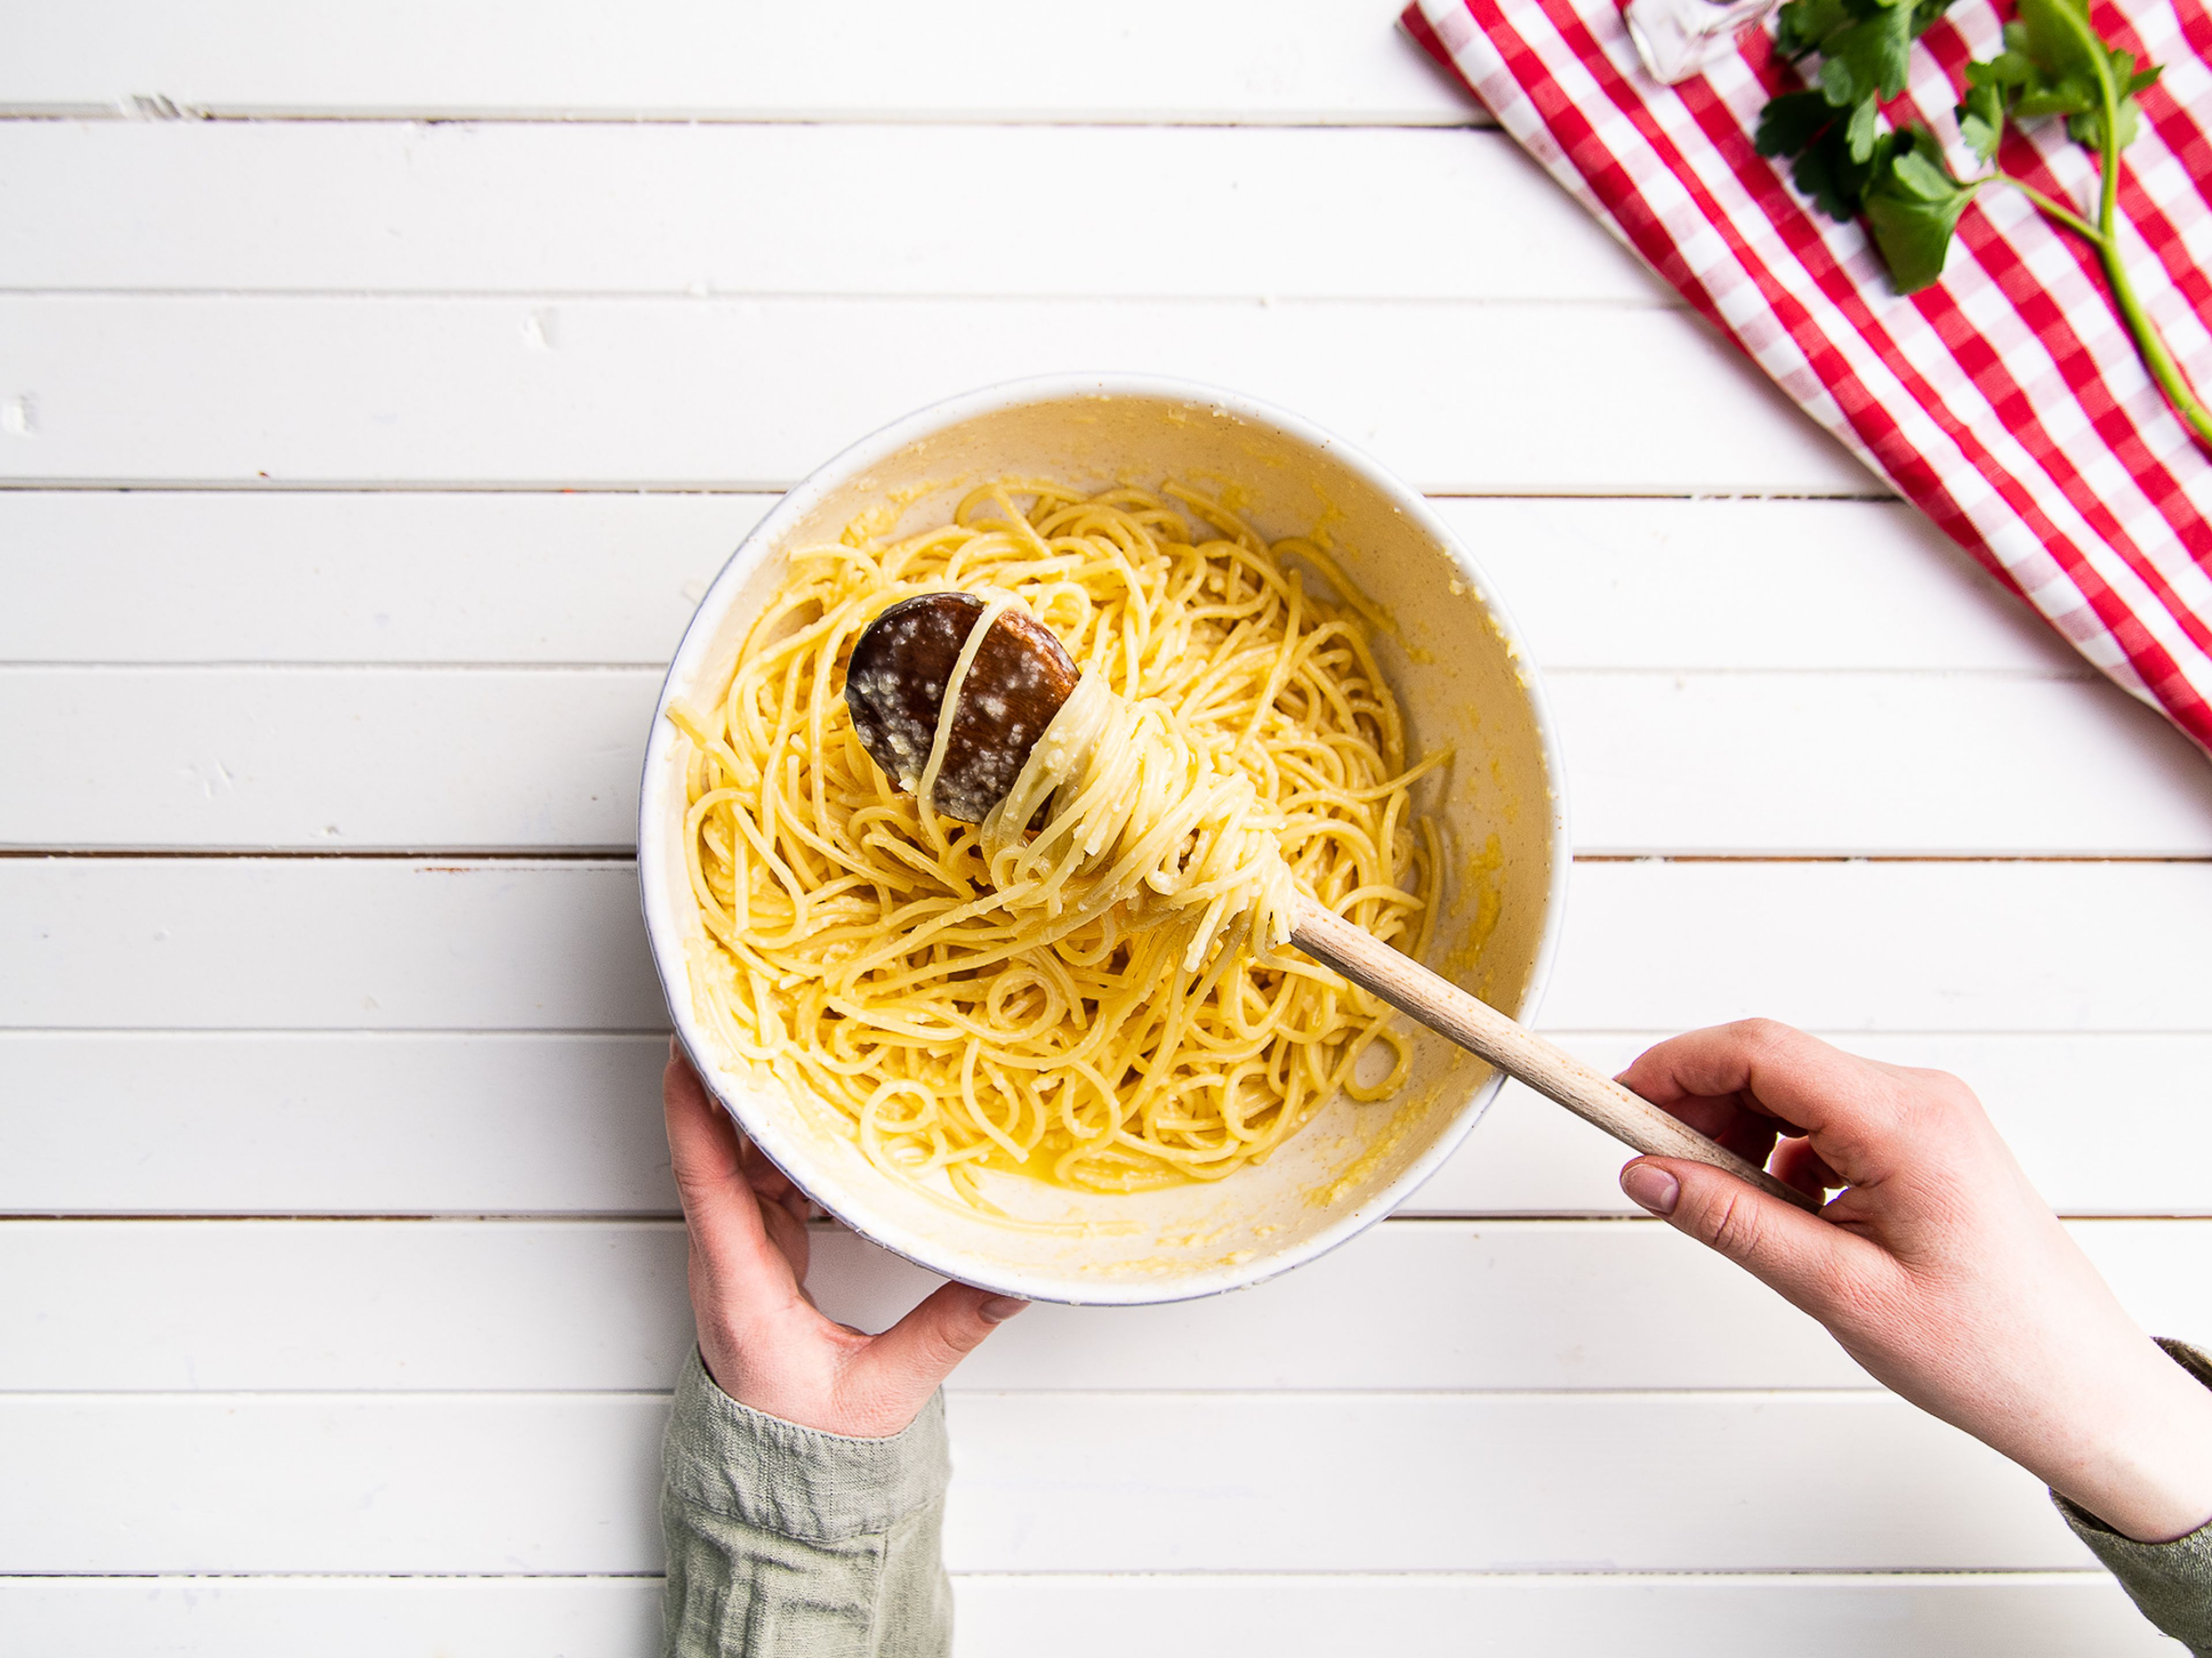 Den Ofen auf 180°C vorheizen. Spaghetti in kochendem Salzwasser ca. 10 Min. al dente kochen und abgießen. Eier in eine Schüssel geben, etwas von dem geriebenen Parmesan hinzufügen und miteinander verquirlen. Spaghetti hinzufügen und mit der Parmesan-Ei-Mischung vermengen.